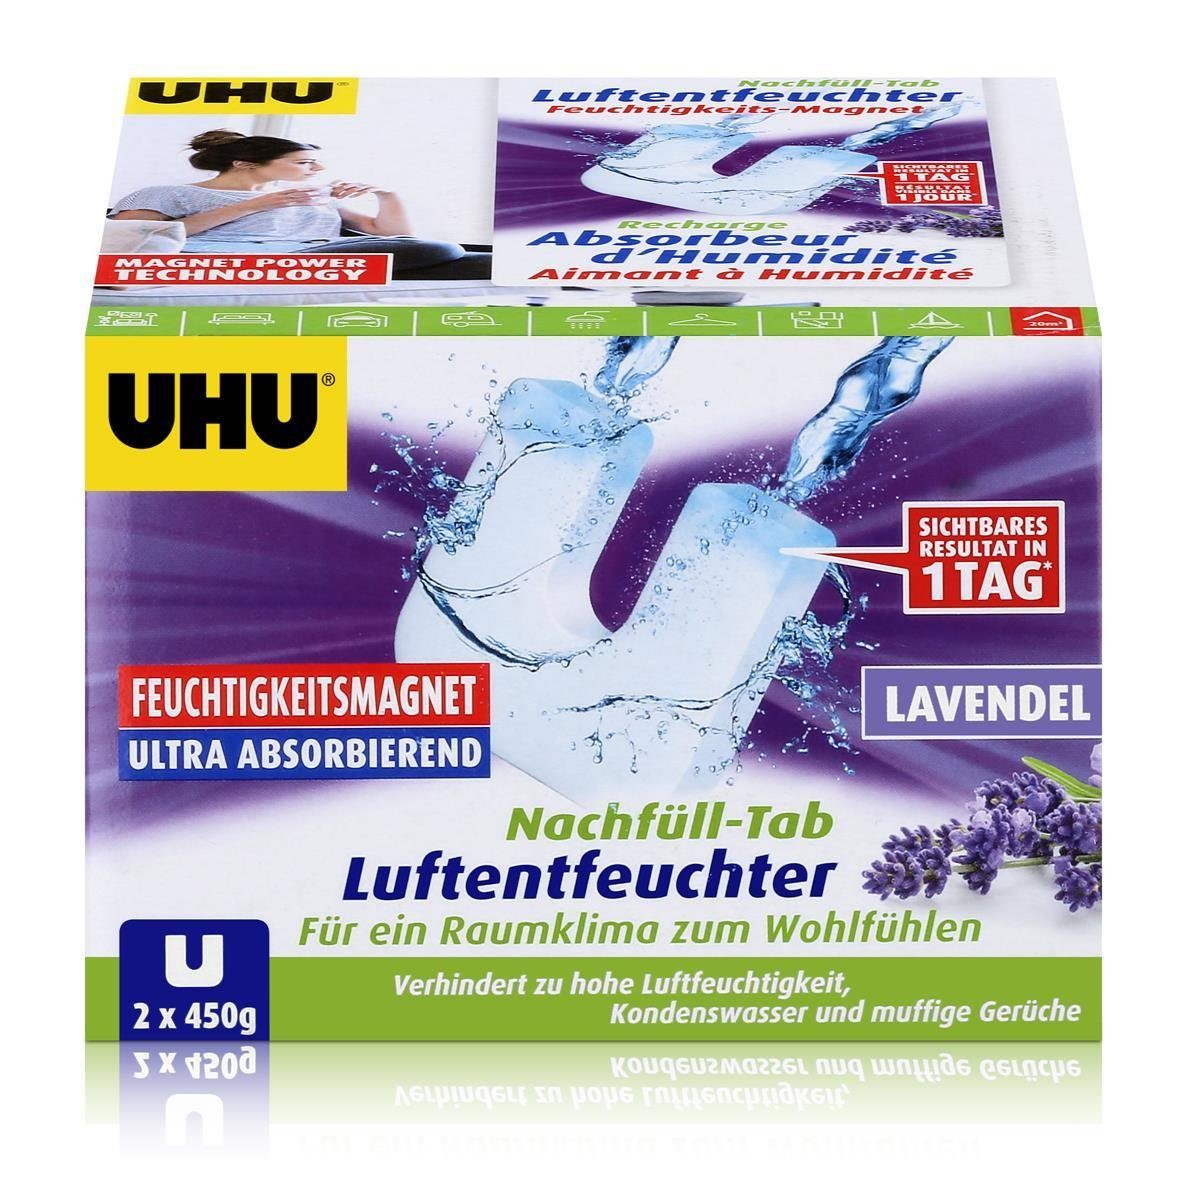 UHU Luftentfeuchter Uhu Luftentfeuchter Nachfüll-Tab Lavendel 2x450g Feuchtigkeits-Magnet